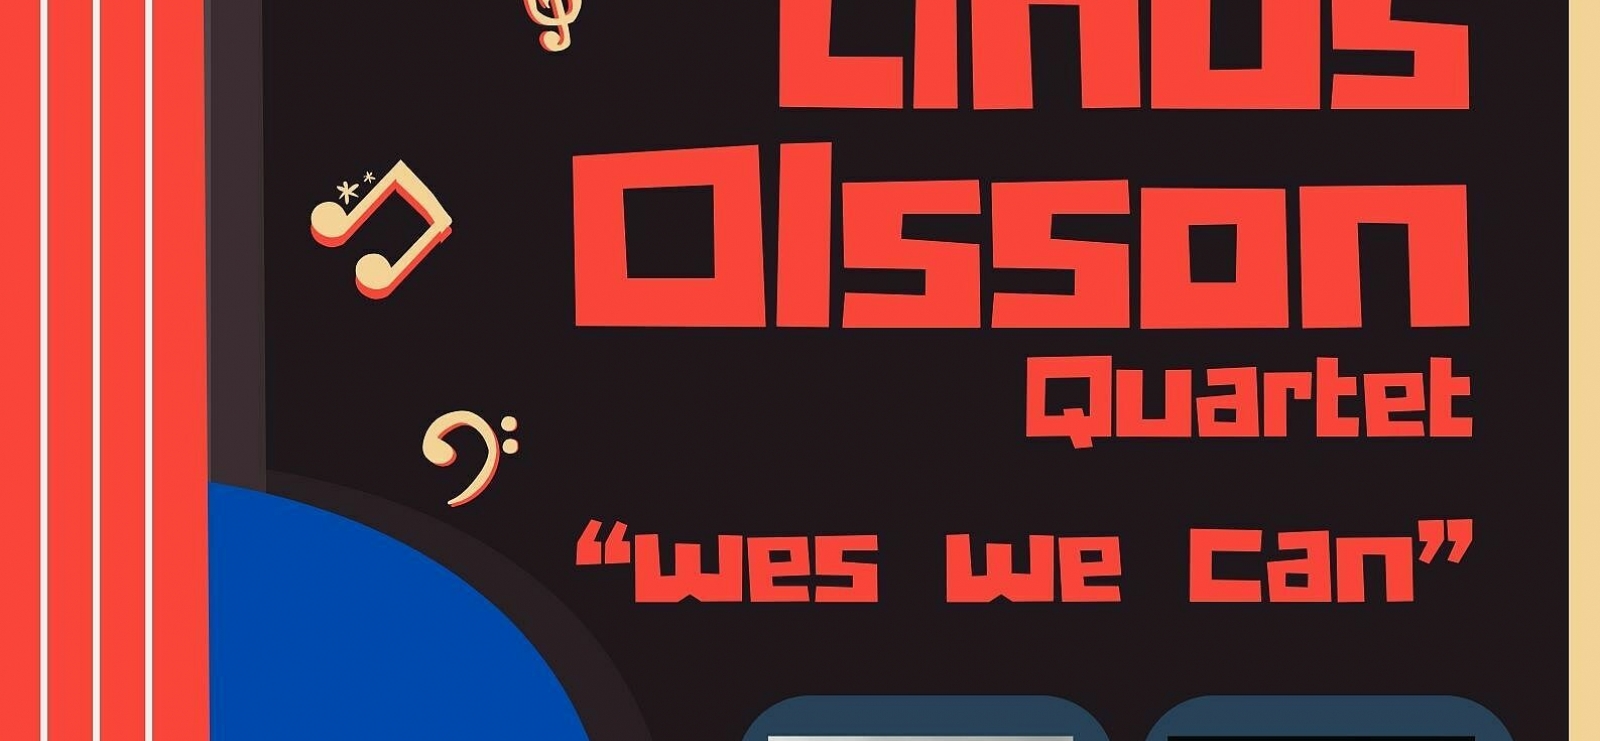 Linus Olsson quartet « Wes we can »